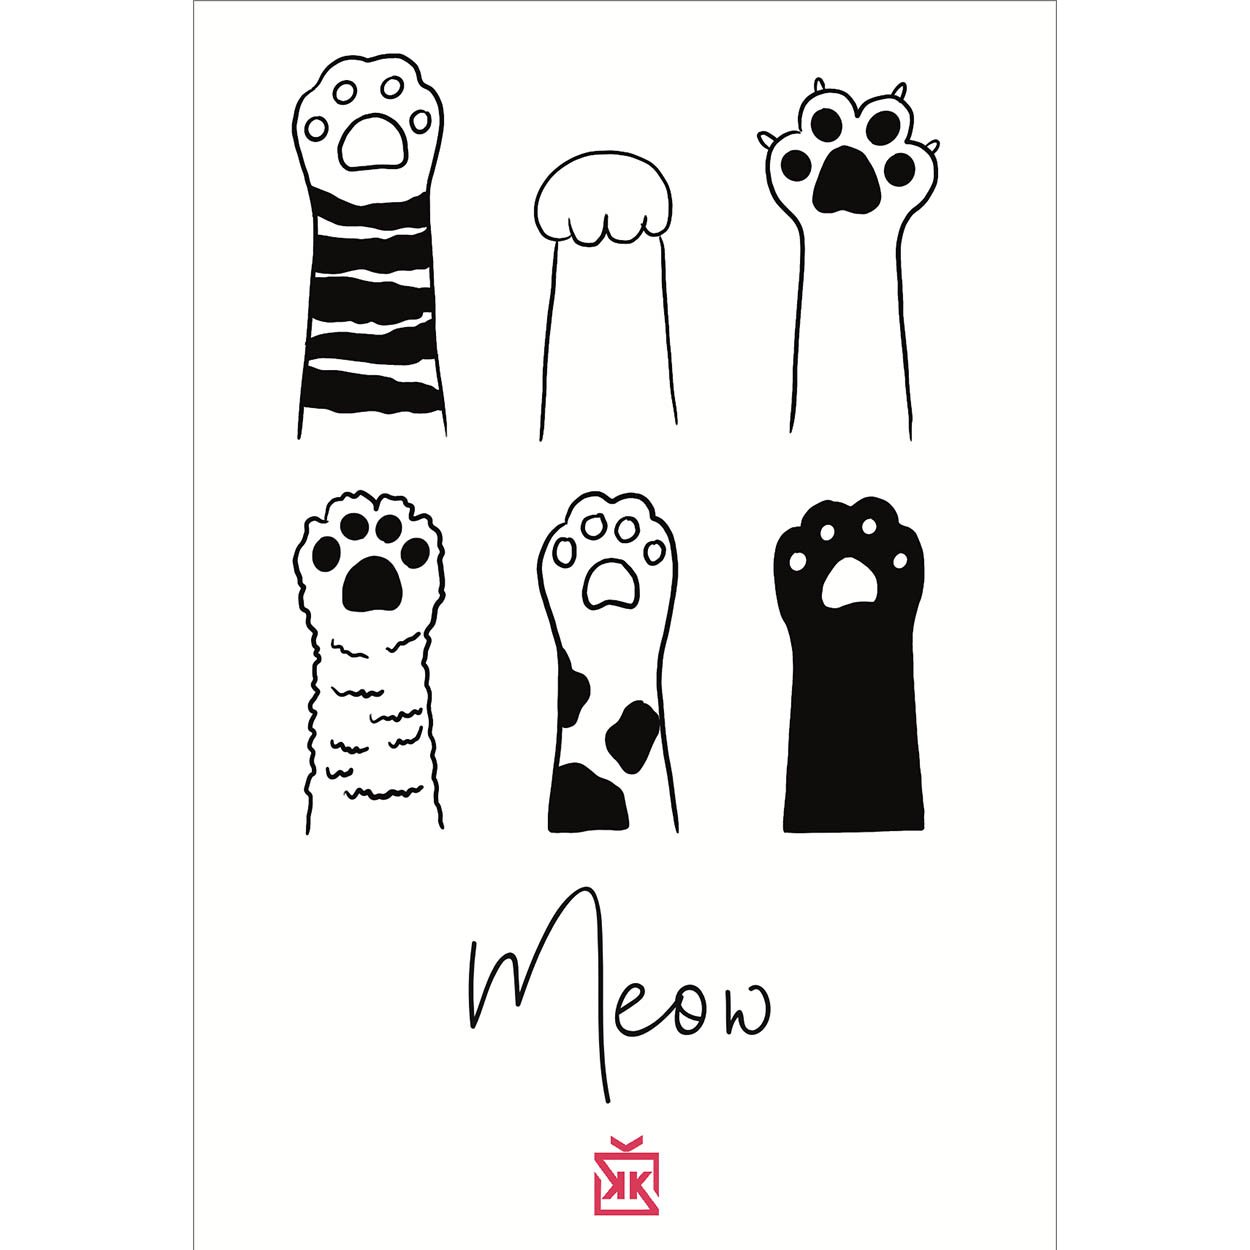 655109-meow-motto-karti